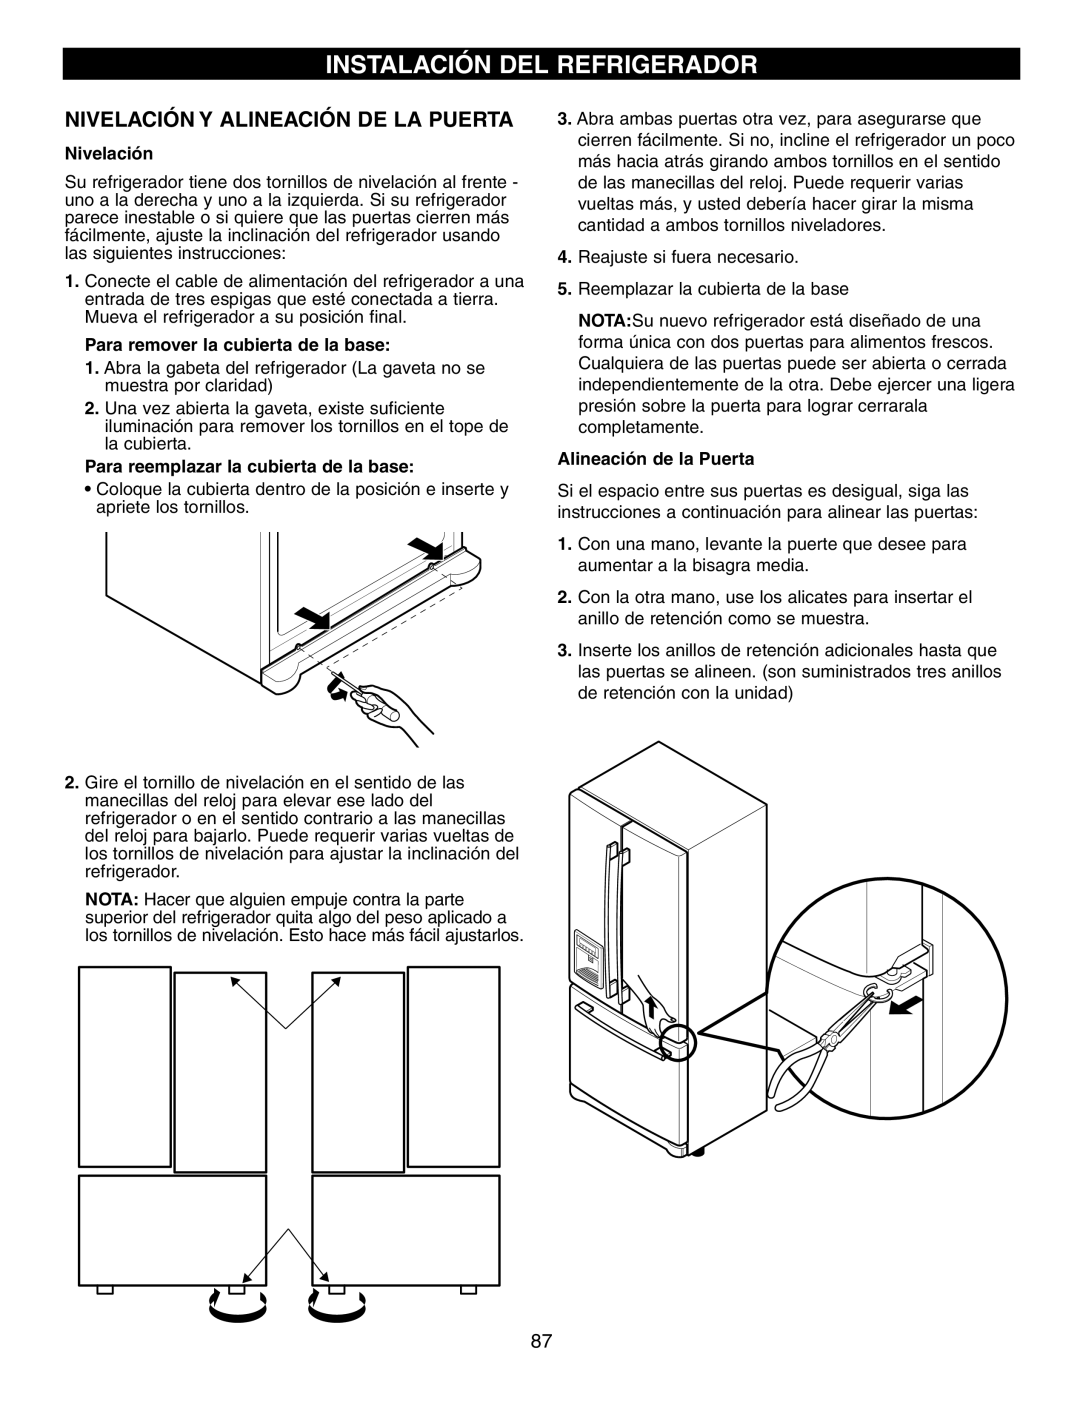 LG Electronics LFX25960 manual Instalación Del Refrigerador, Nivelación Y Alineación De La Puerta, Alineación de la Puerta 